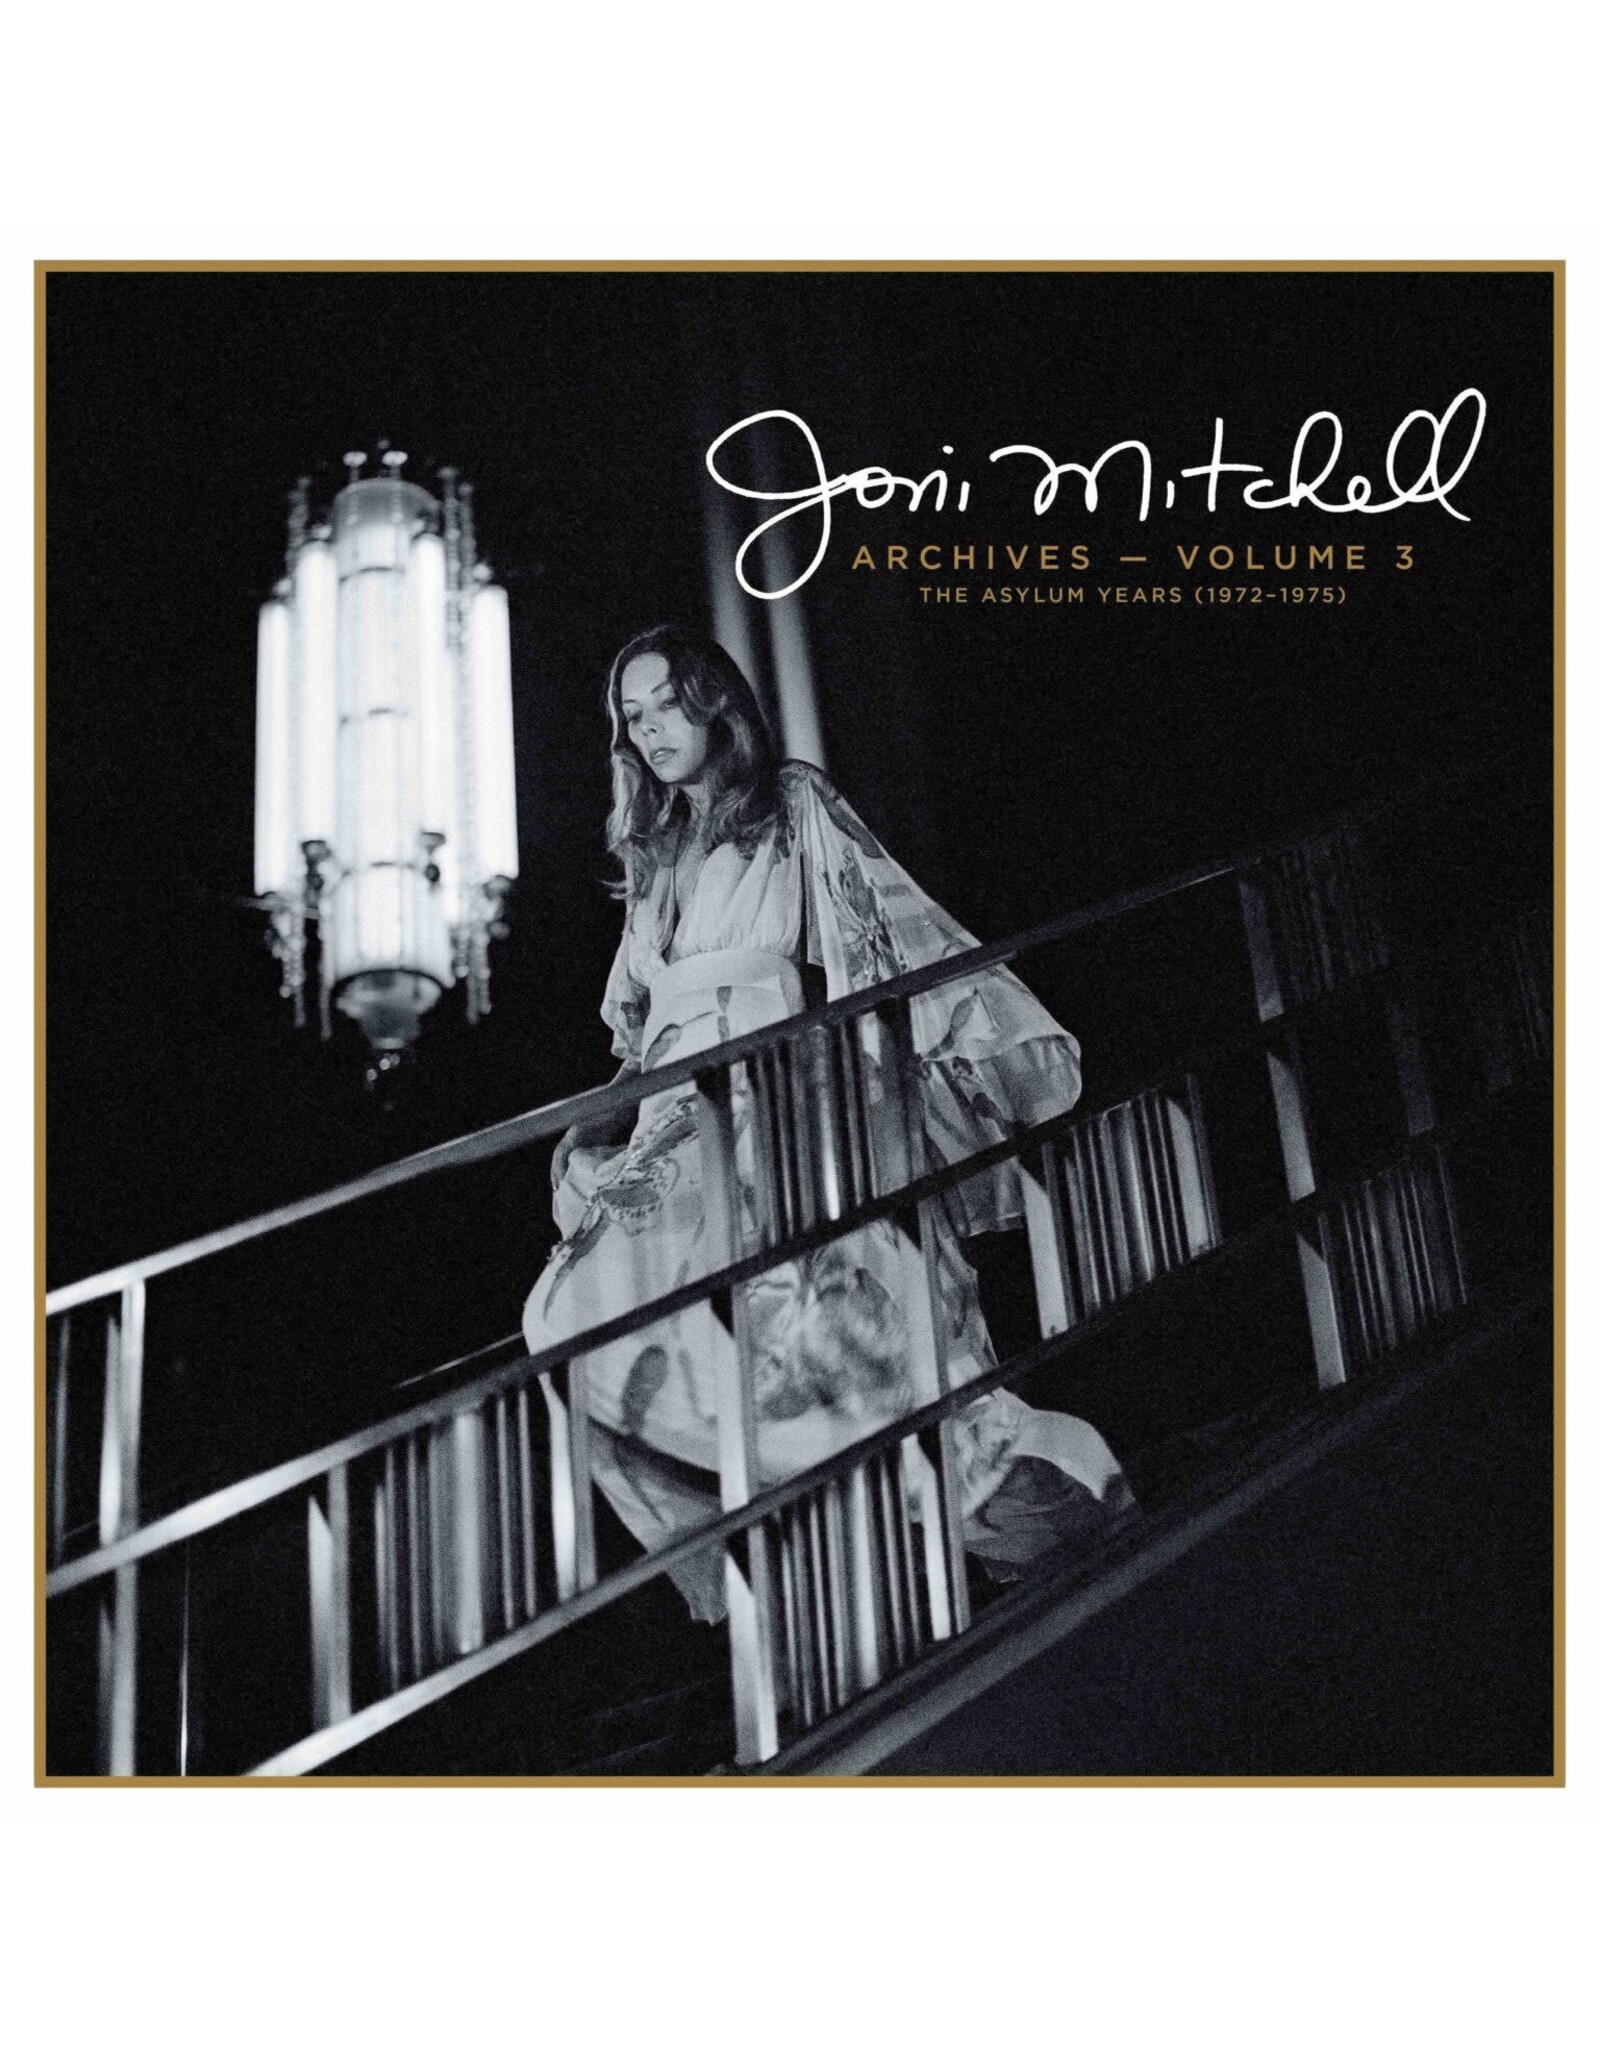 Joni Mitchell - Joni Mitchell Archives, Vol. 3 (1972-1975): Highlights